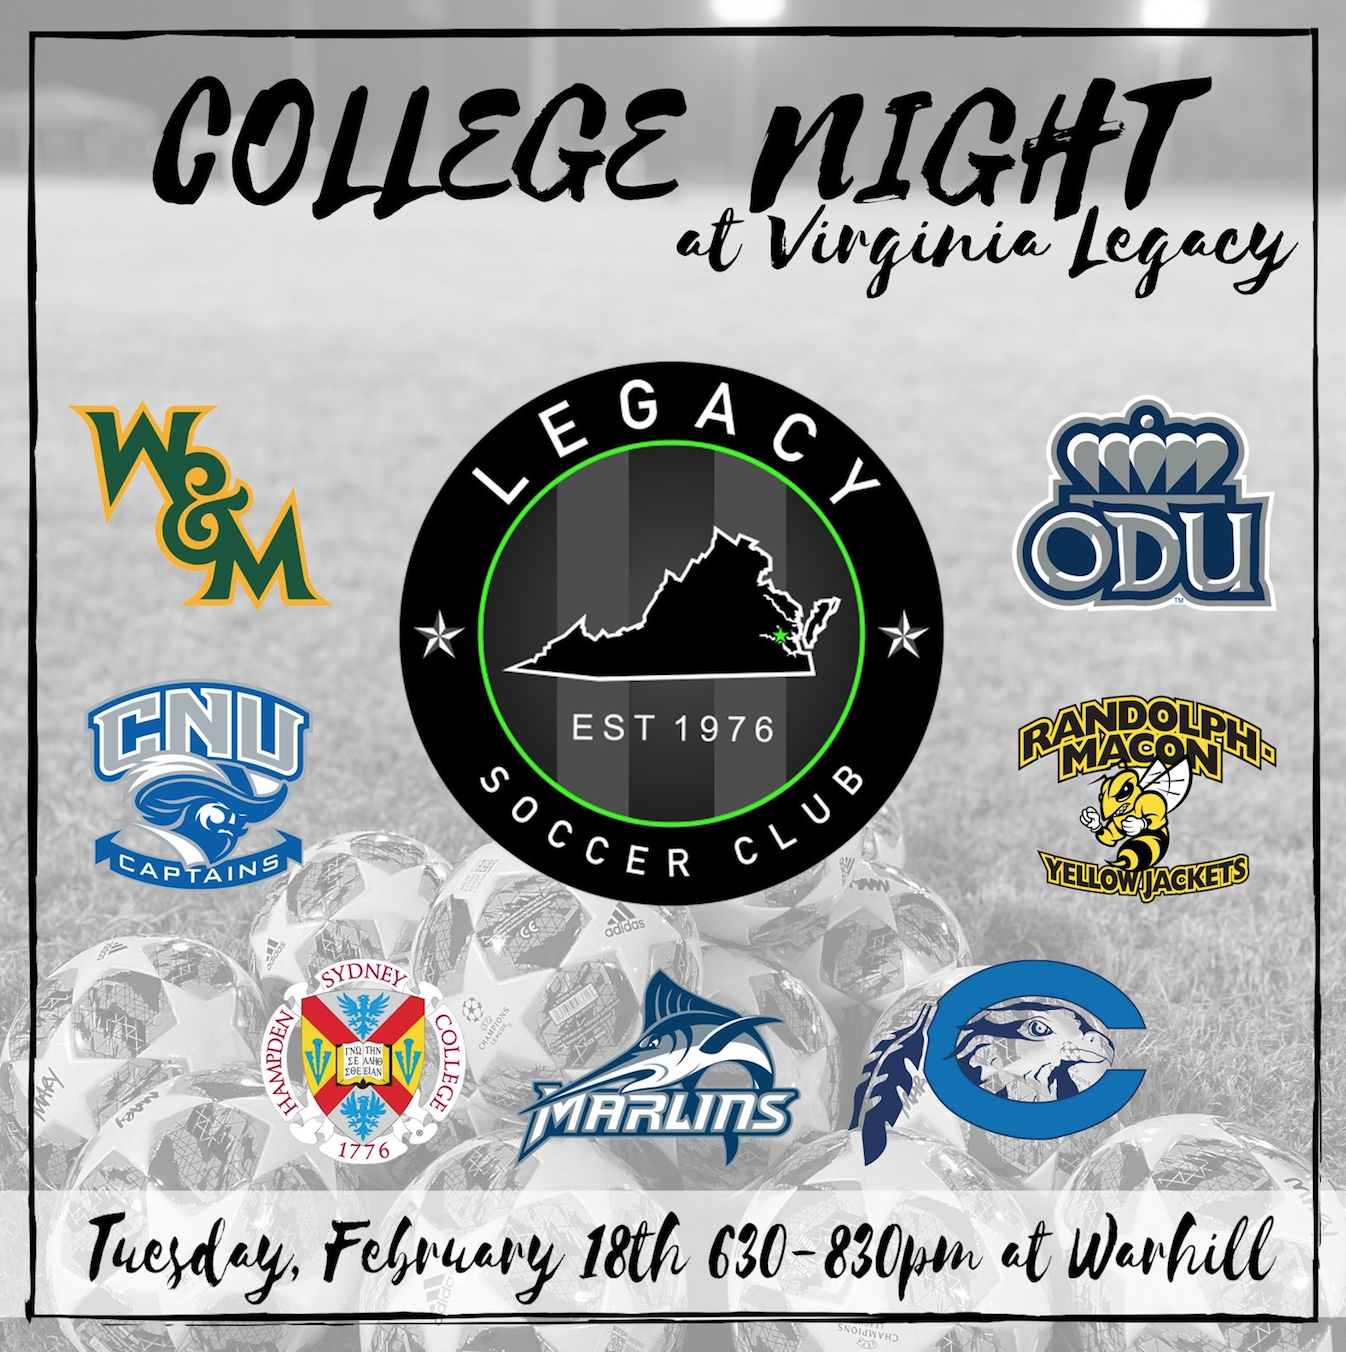 Legacy College ID Virginia Legacy Soccer Club